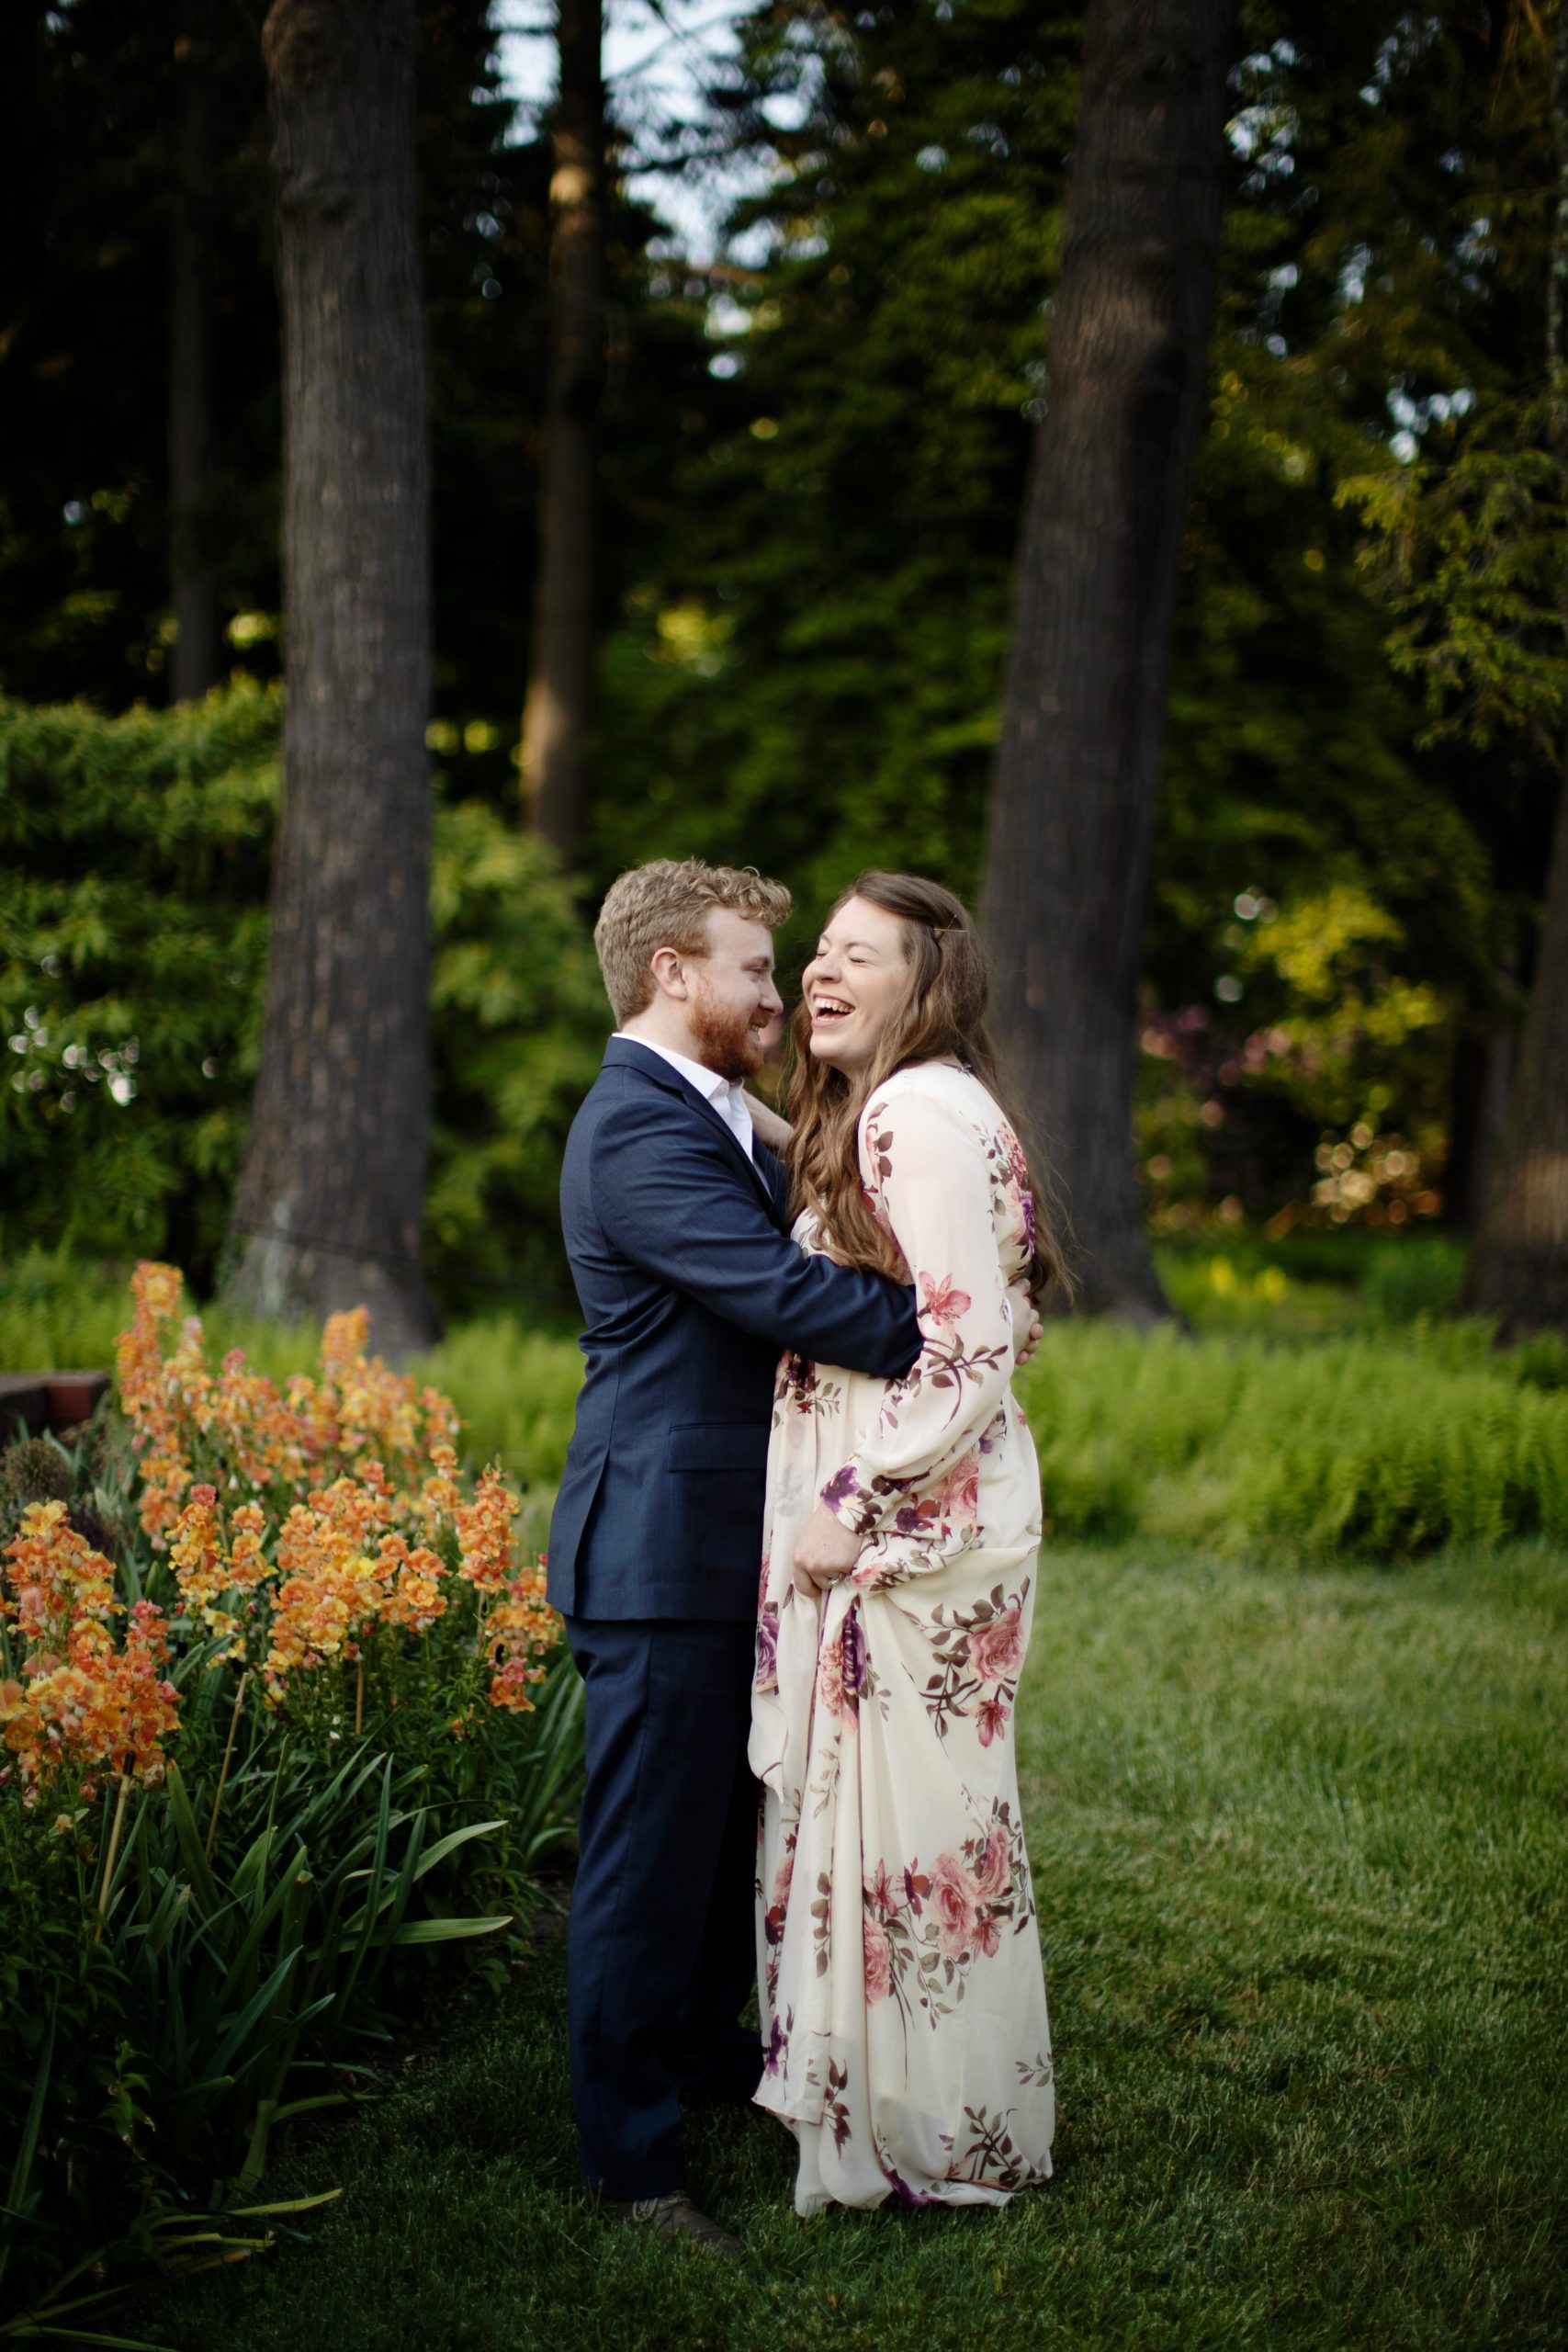 Longwood Gardens Spring Engagement Photos captured by Philadelphia Wedding Photographer Janae Rose Photography